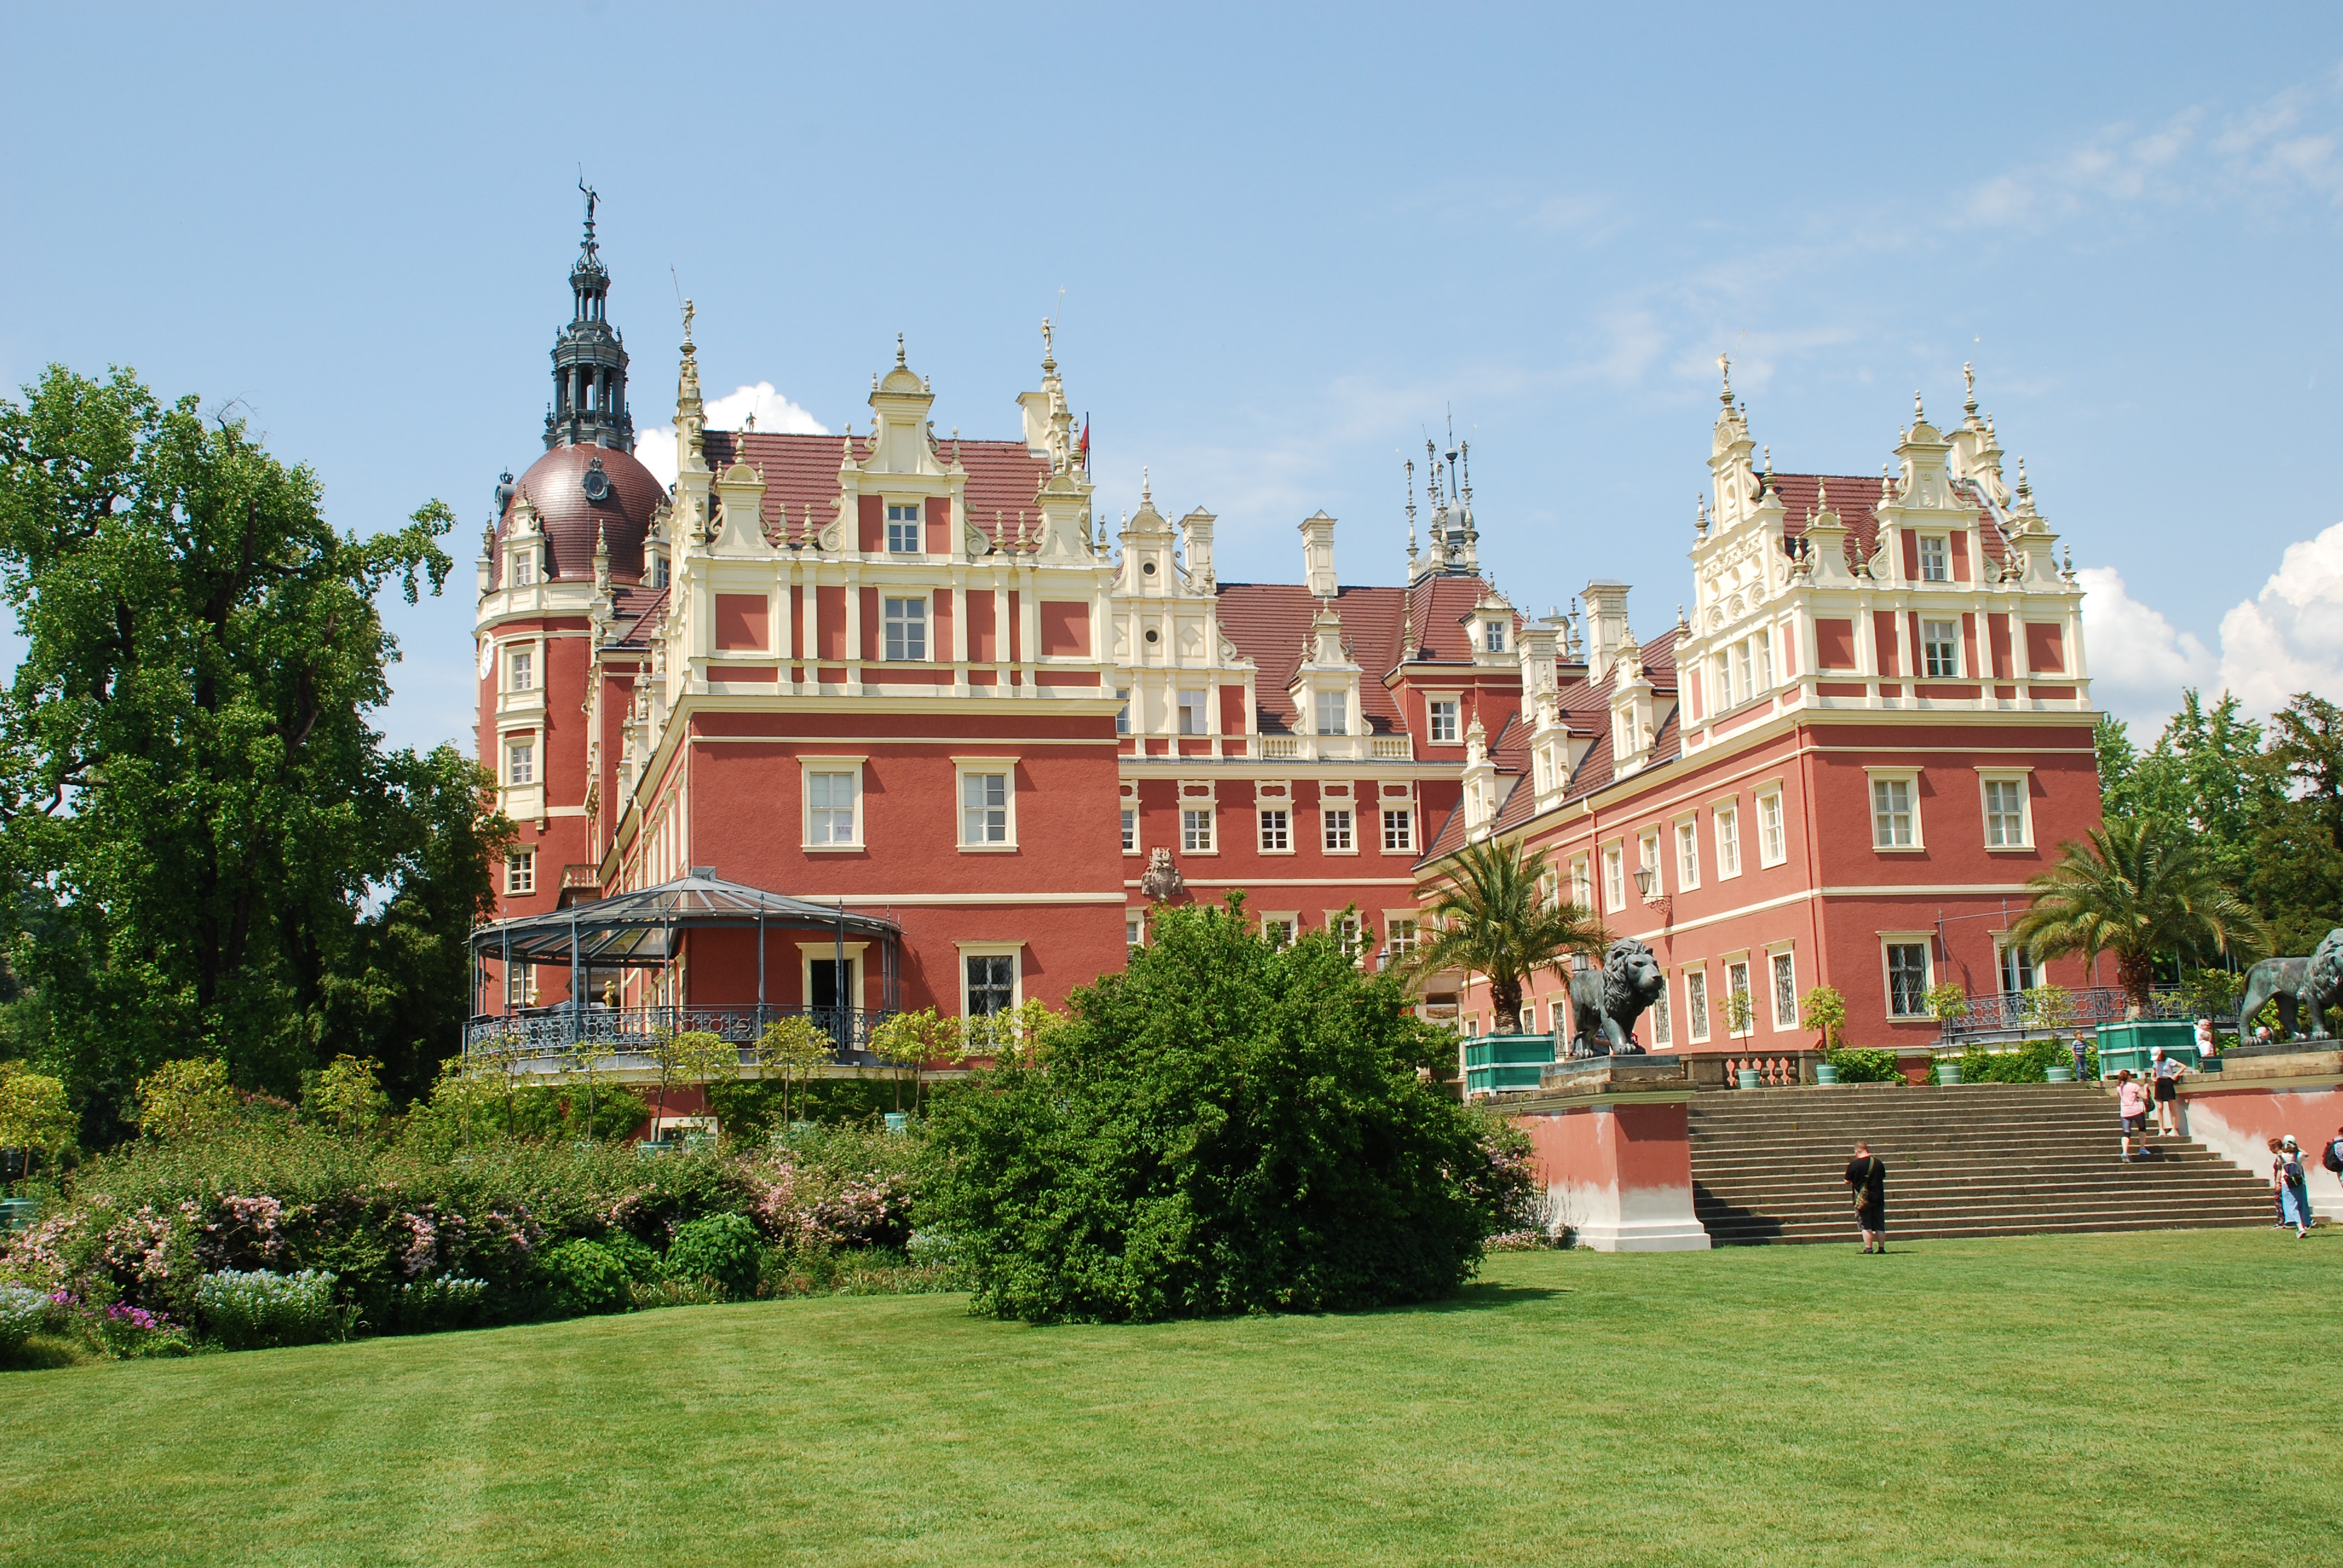 Zamek w Parku Mużakowskim po niemieckiej stronie z czerwoną elewacją i białymi gzymsami